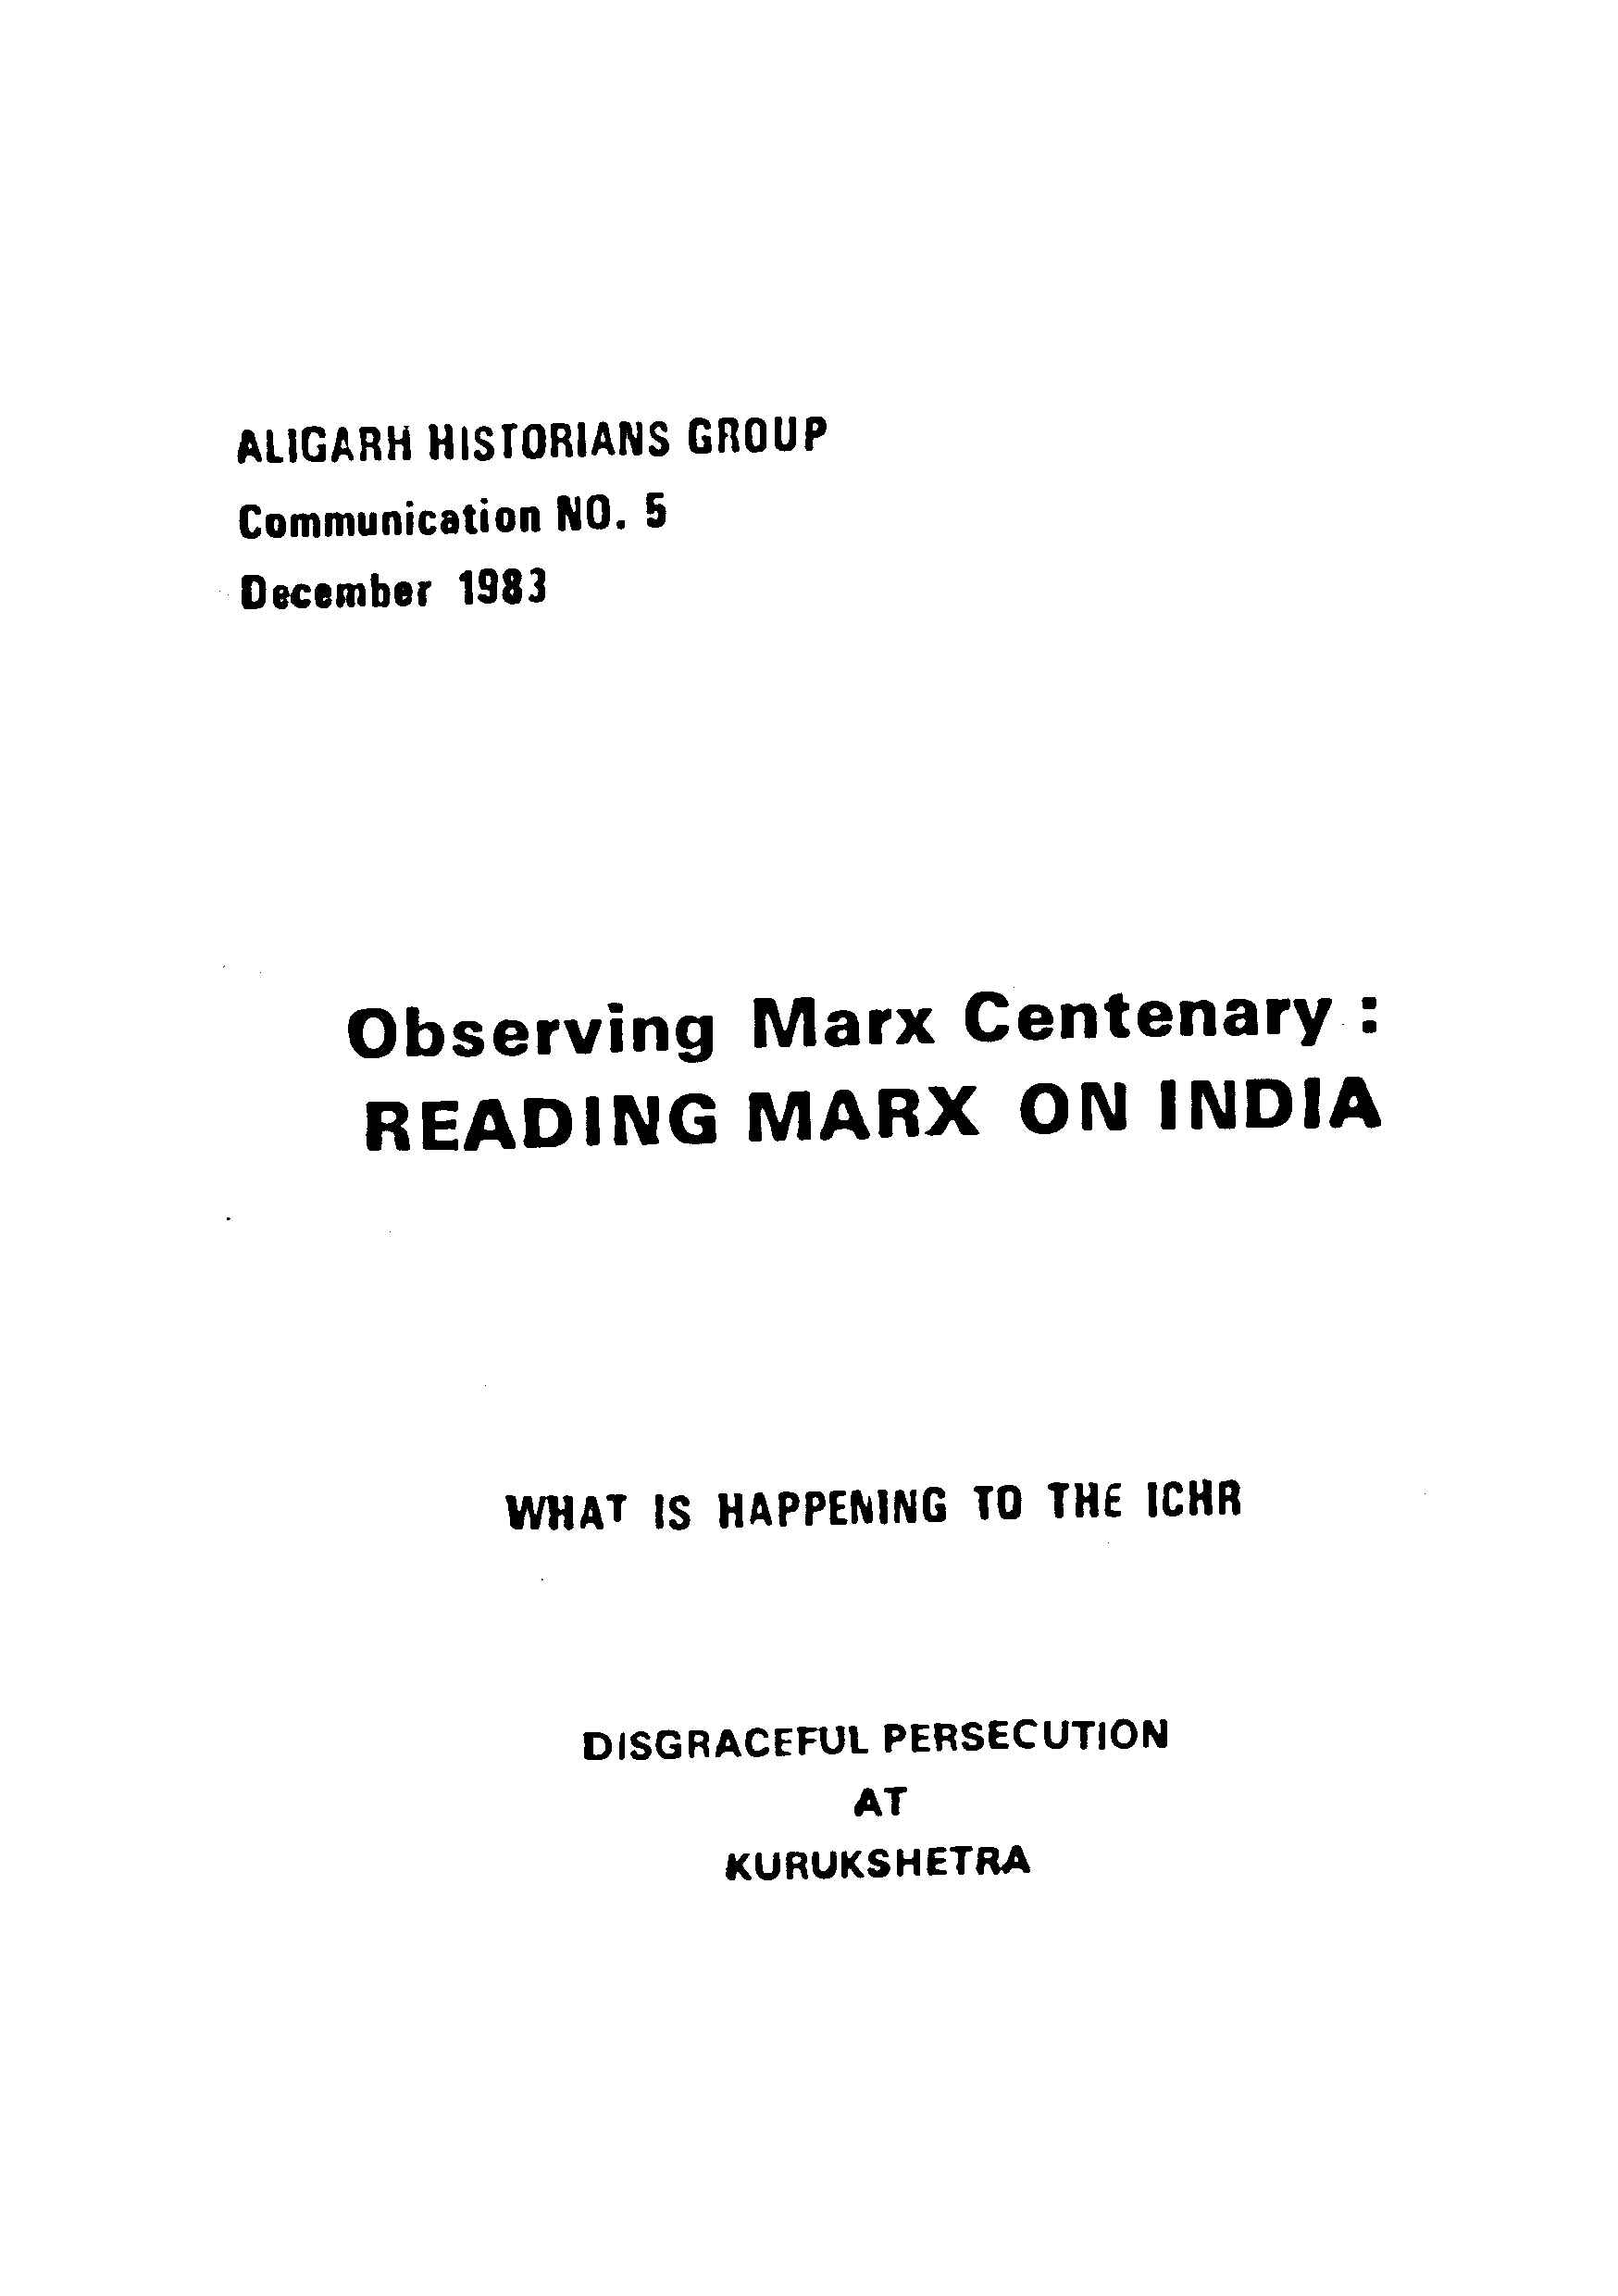 Observing marx centenary Reading marx on India